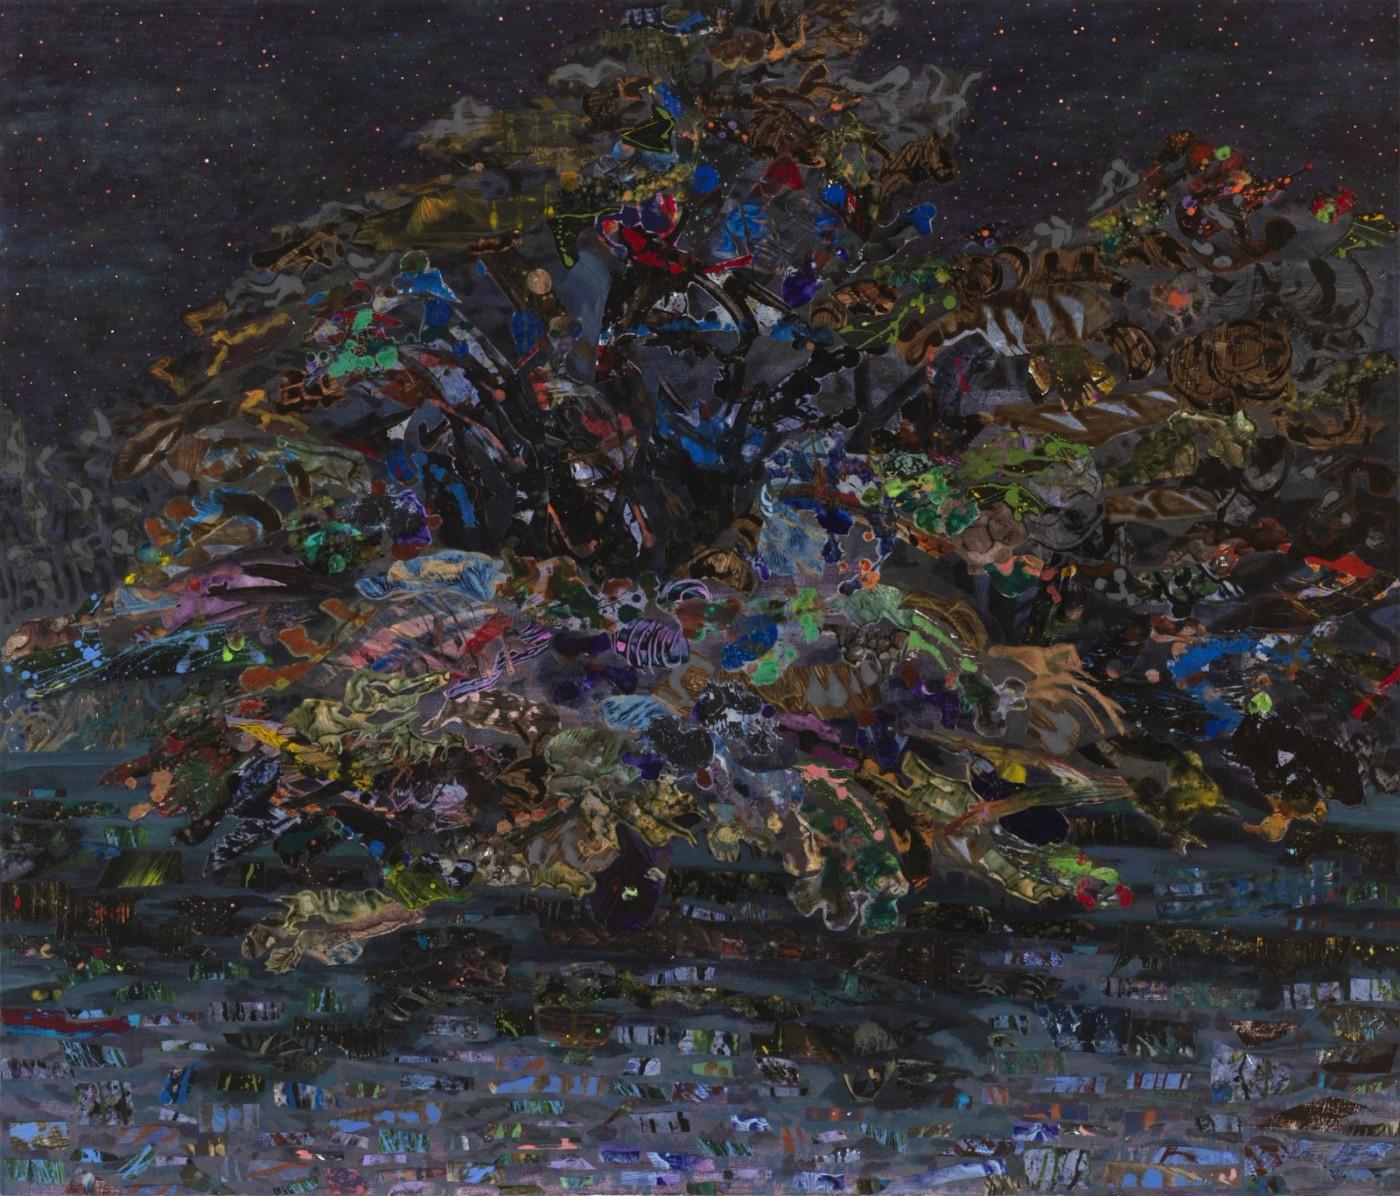 Mary Lou Zelazny, The Blackeyed Tree #2, 2017